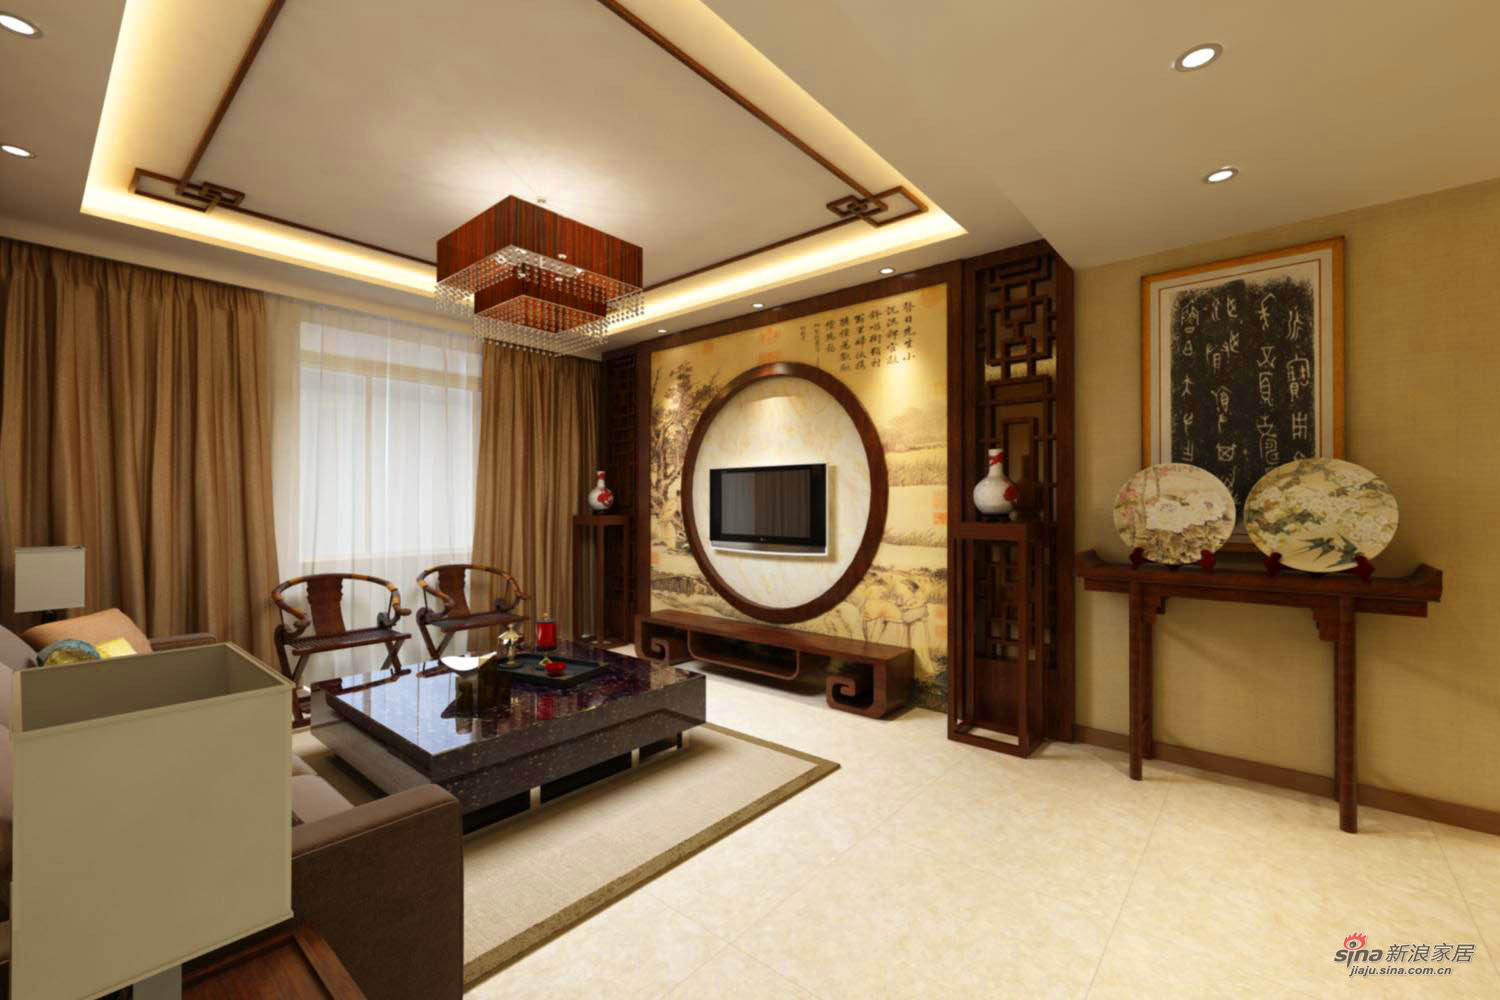 中式 二居 客厅图片来自用户1907661335在中式家居设计75的分享